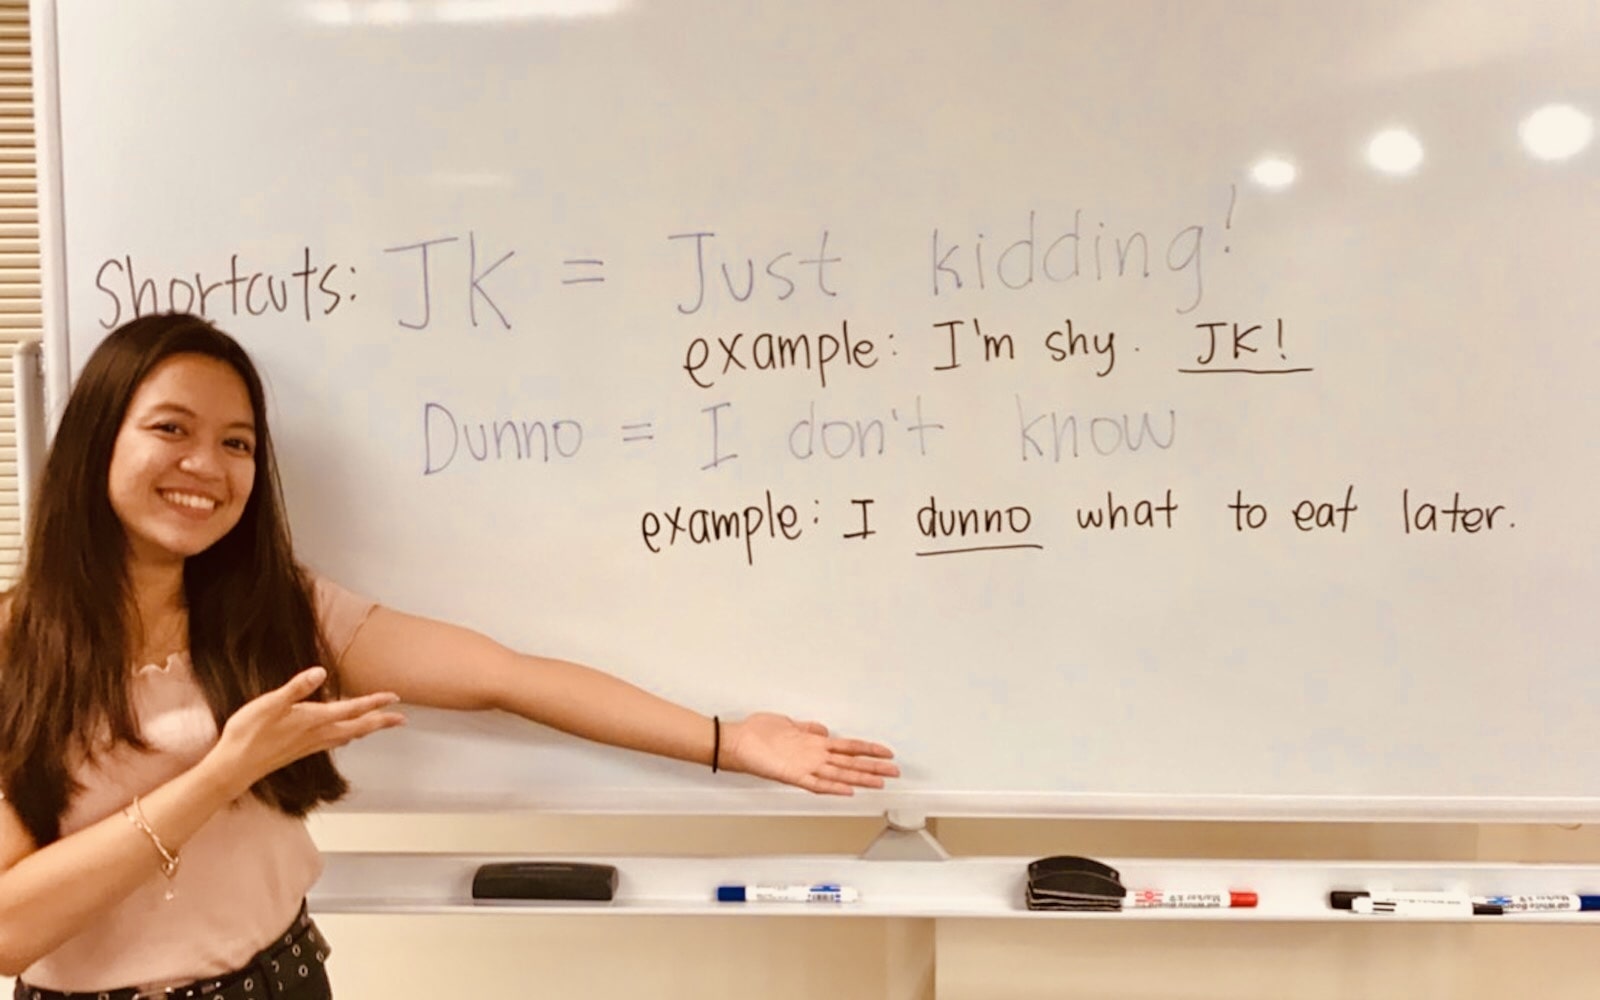 Jkやdunnoの意味とは 英語ネイティブがよく使うスラング紹介 Aitem 池袋 目白の英会話 コミュニケーション教室